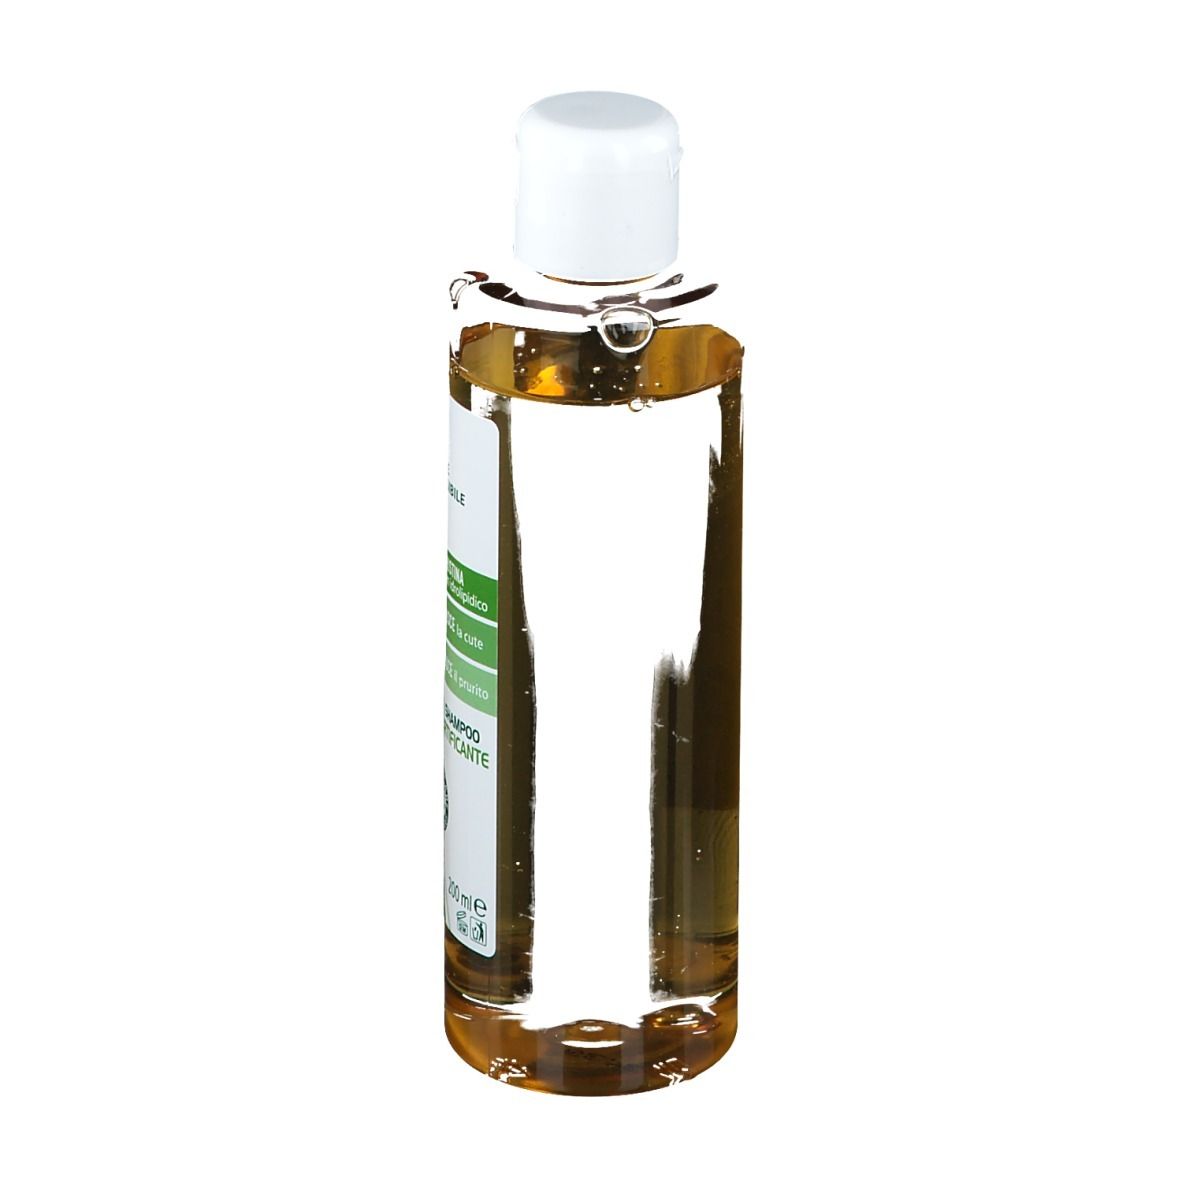 Bioscalin® Oil Shampoo Fortificante